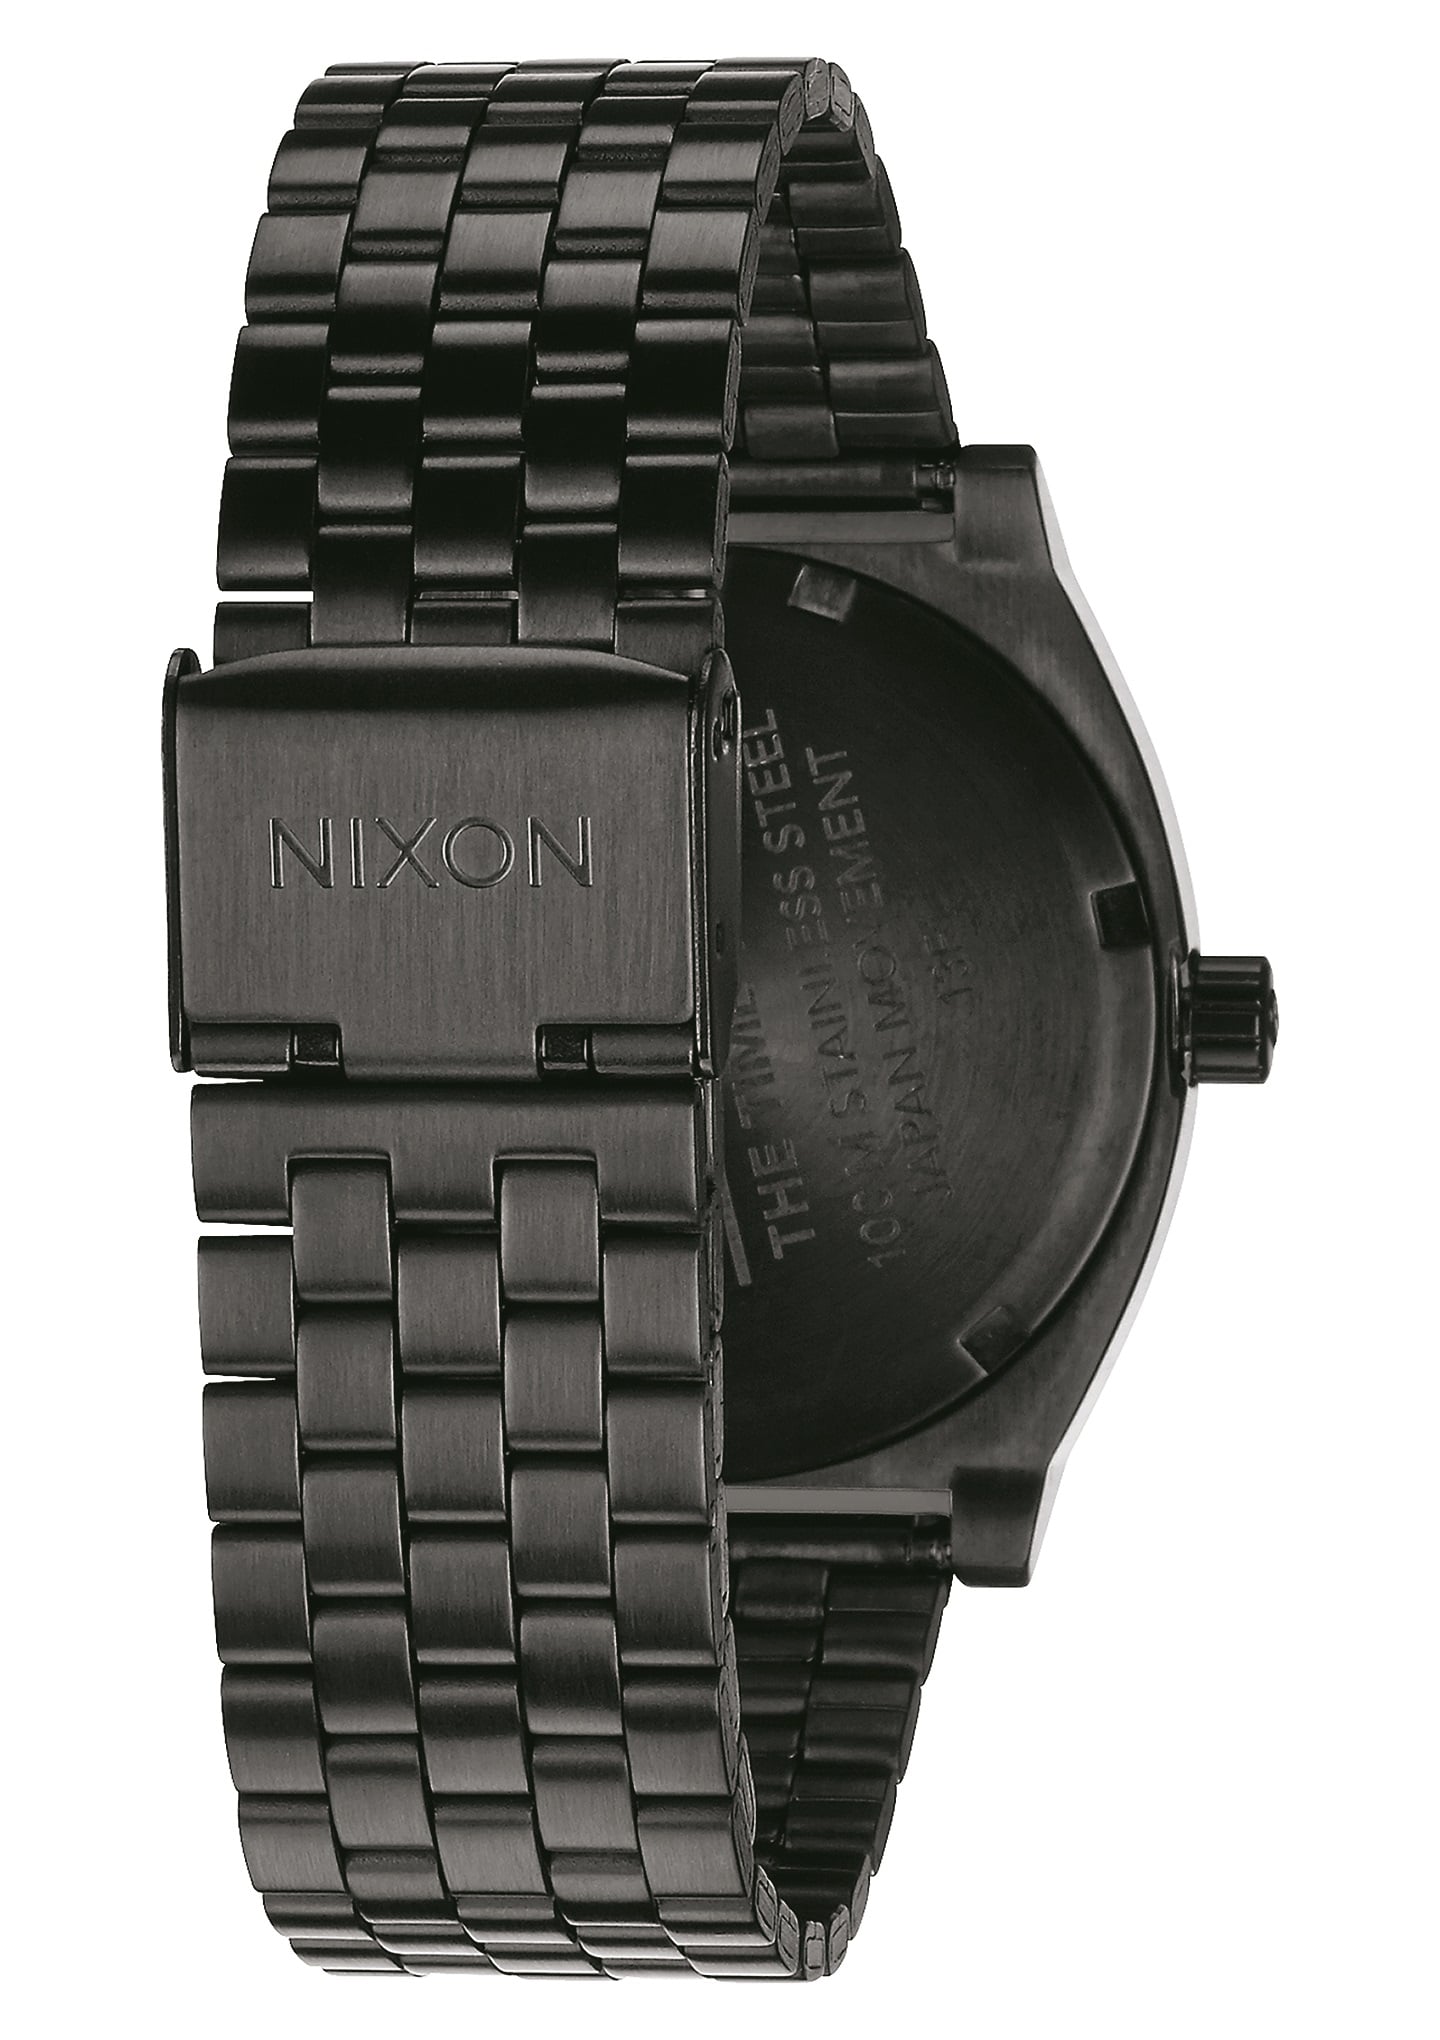 NIXON ニクソン Time Teller タイムテラー All Black 3007001591398 日本製Miyota3針クオーツムーブメント  腕時計 国内正規品【送料無料 北海道/沖縄/離島を除く】